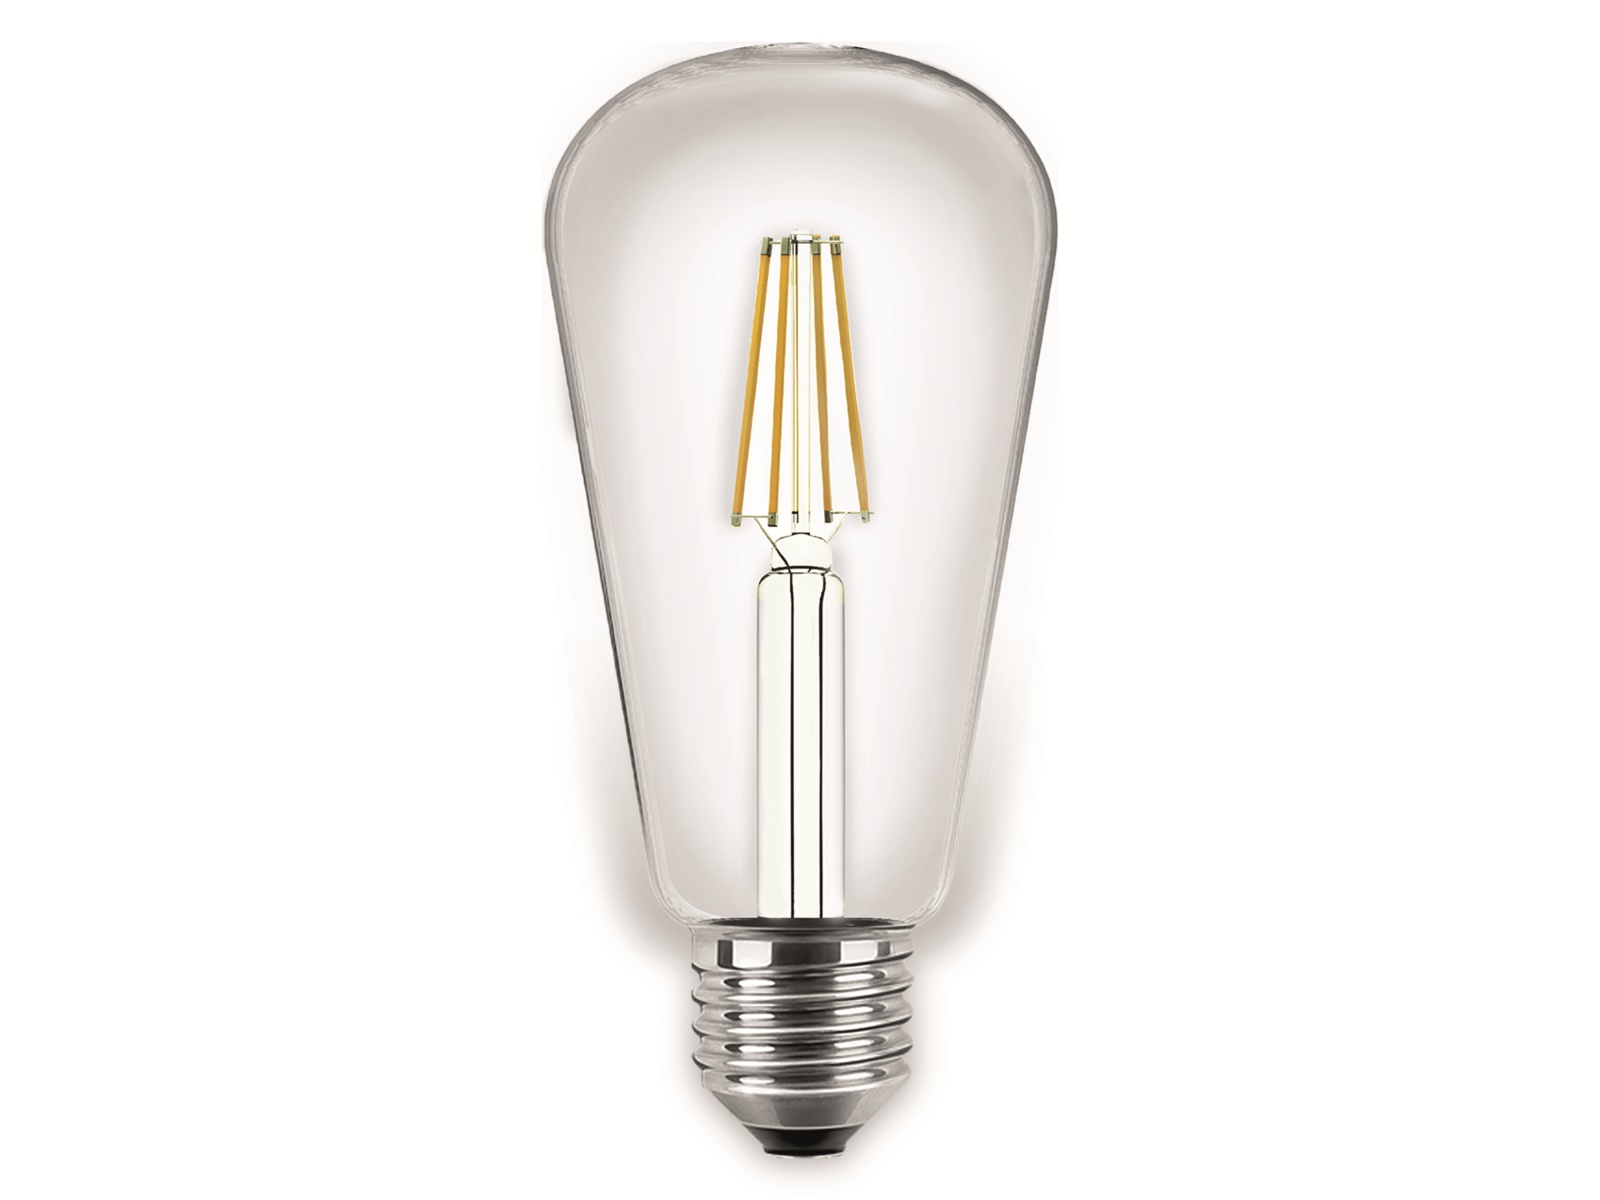 BLULAXA LED-Filament-Lampe, ST64, E27, EEK: E, 4 W, 470 lm, 2700 K